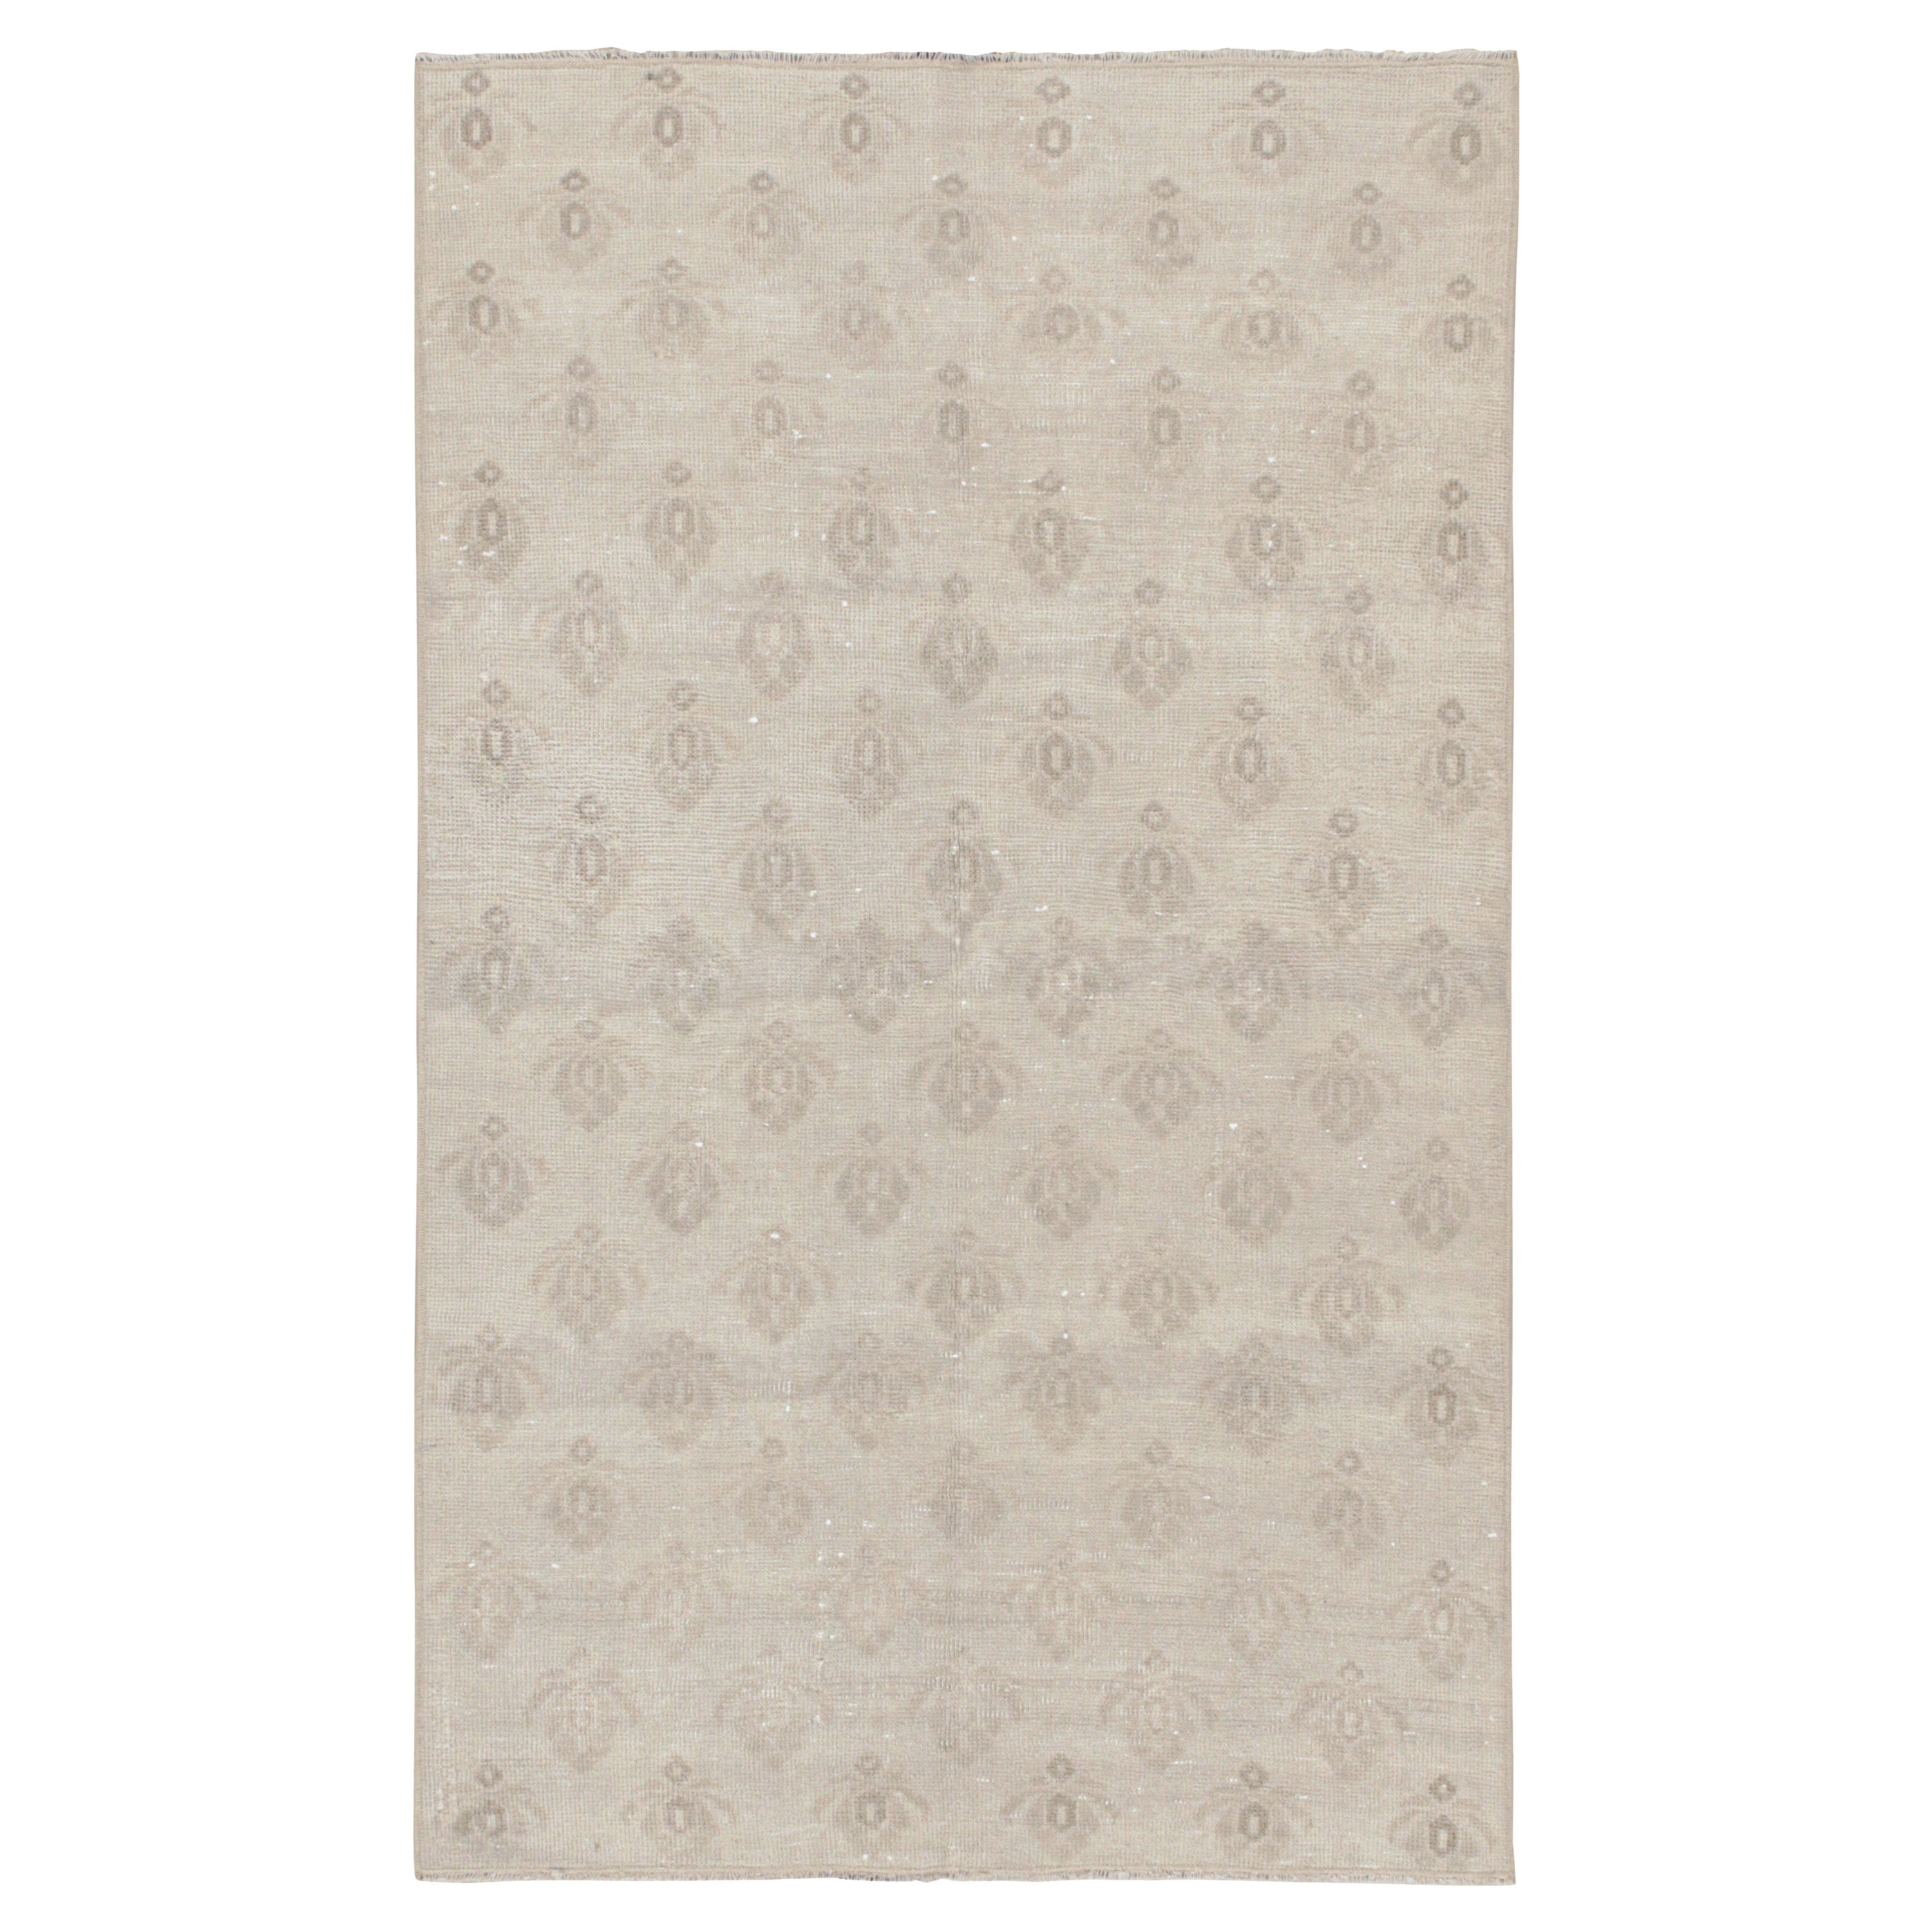 Vintage Zeki Müren Teppich in Off White & Gray Patterns, von Rug & Kilim